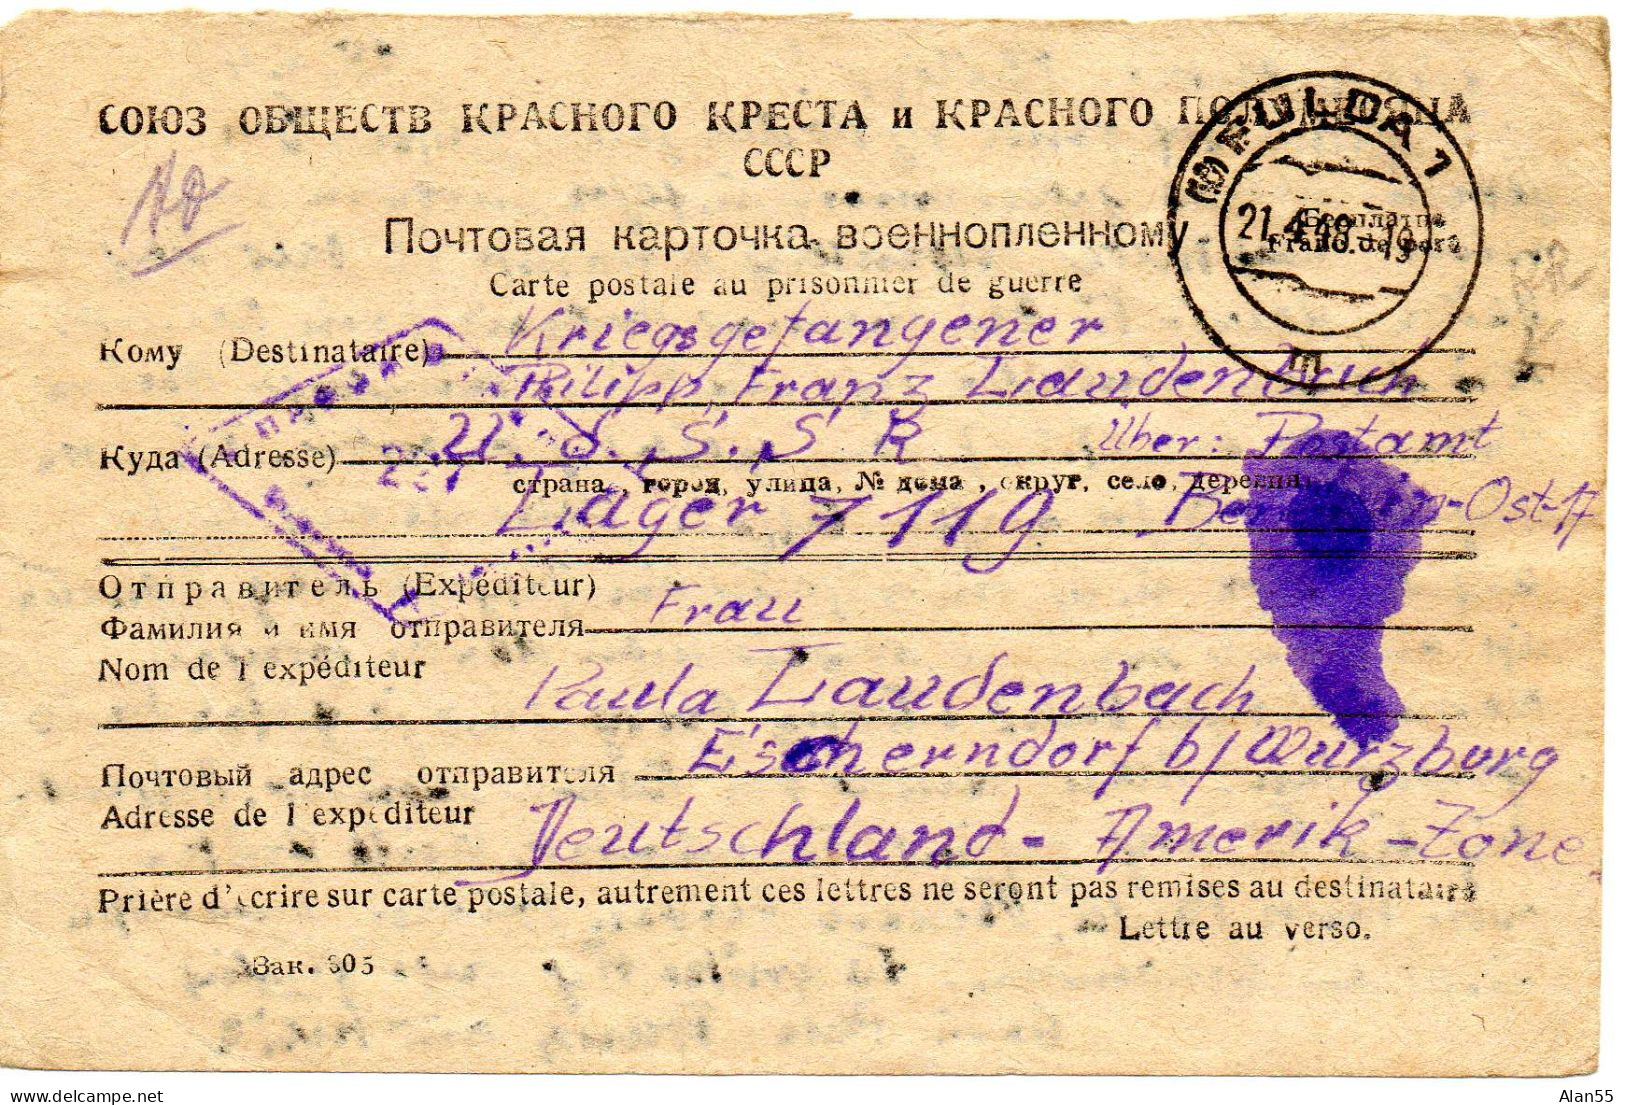 URSS. 1948. CARTE FAMILIALE CROIX-ROUGE. (SENS ALLEMAGNE-URSS). CENSURE - Briefe U. Dokumente